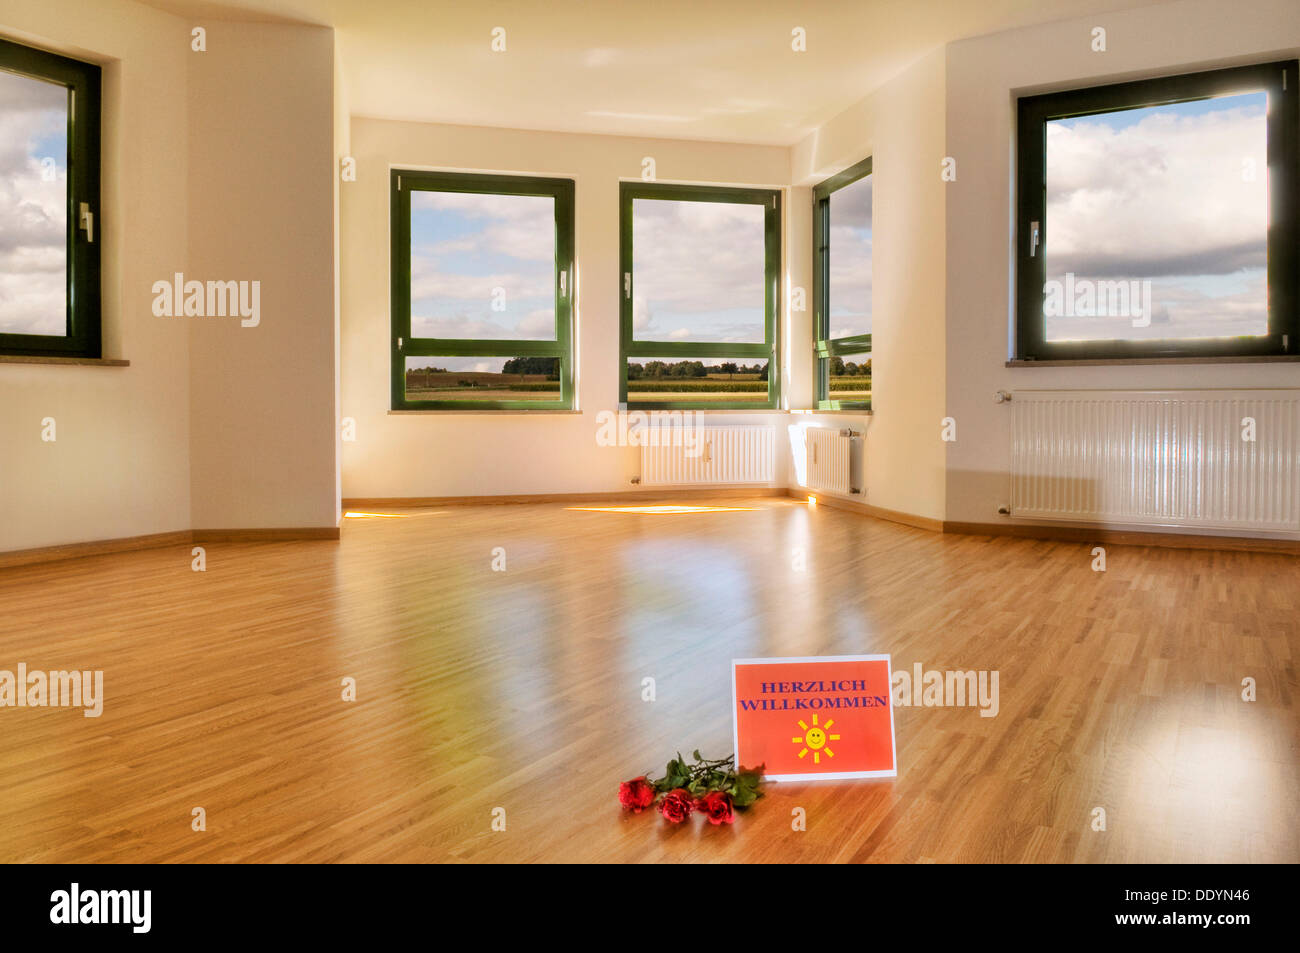 Cartel de bienvenida y rosas en el piso, un gran salón con ventanas y luz  suelo de parquet, composición, alquiler apartamento Fotografía de stock -  Alamy